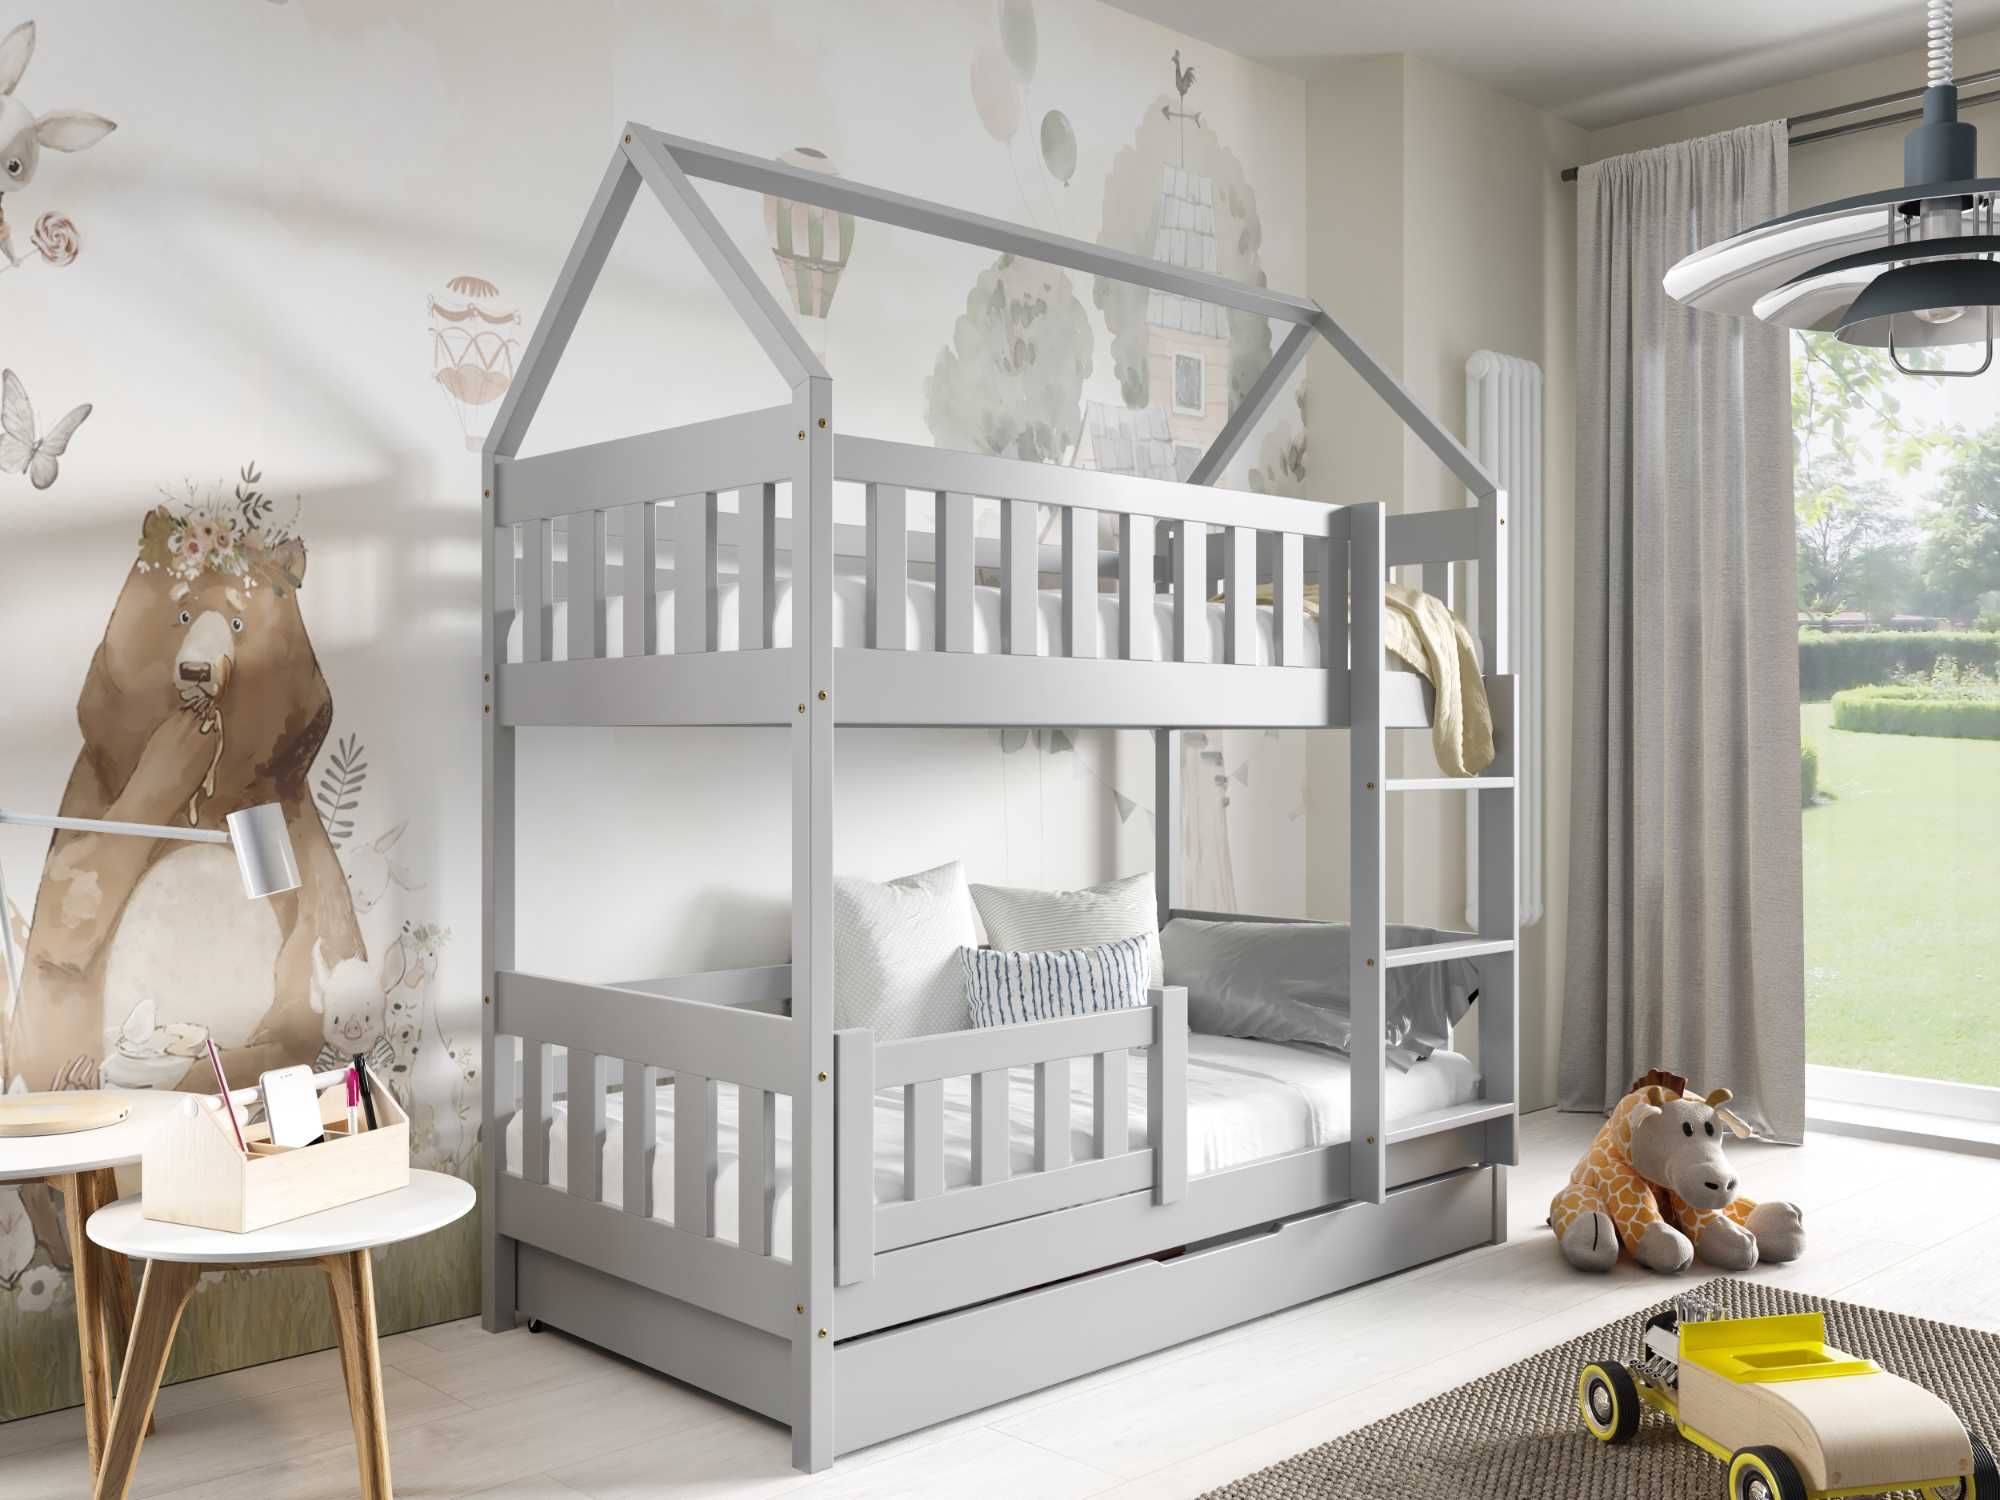 Łóżko dla dzieci sosnowe piętrowe domek ZUZIA - materace w zestawie